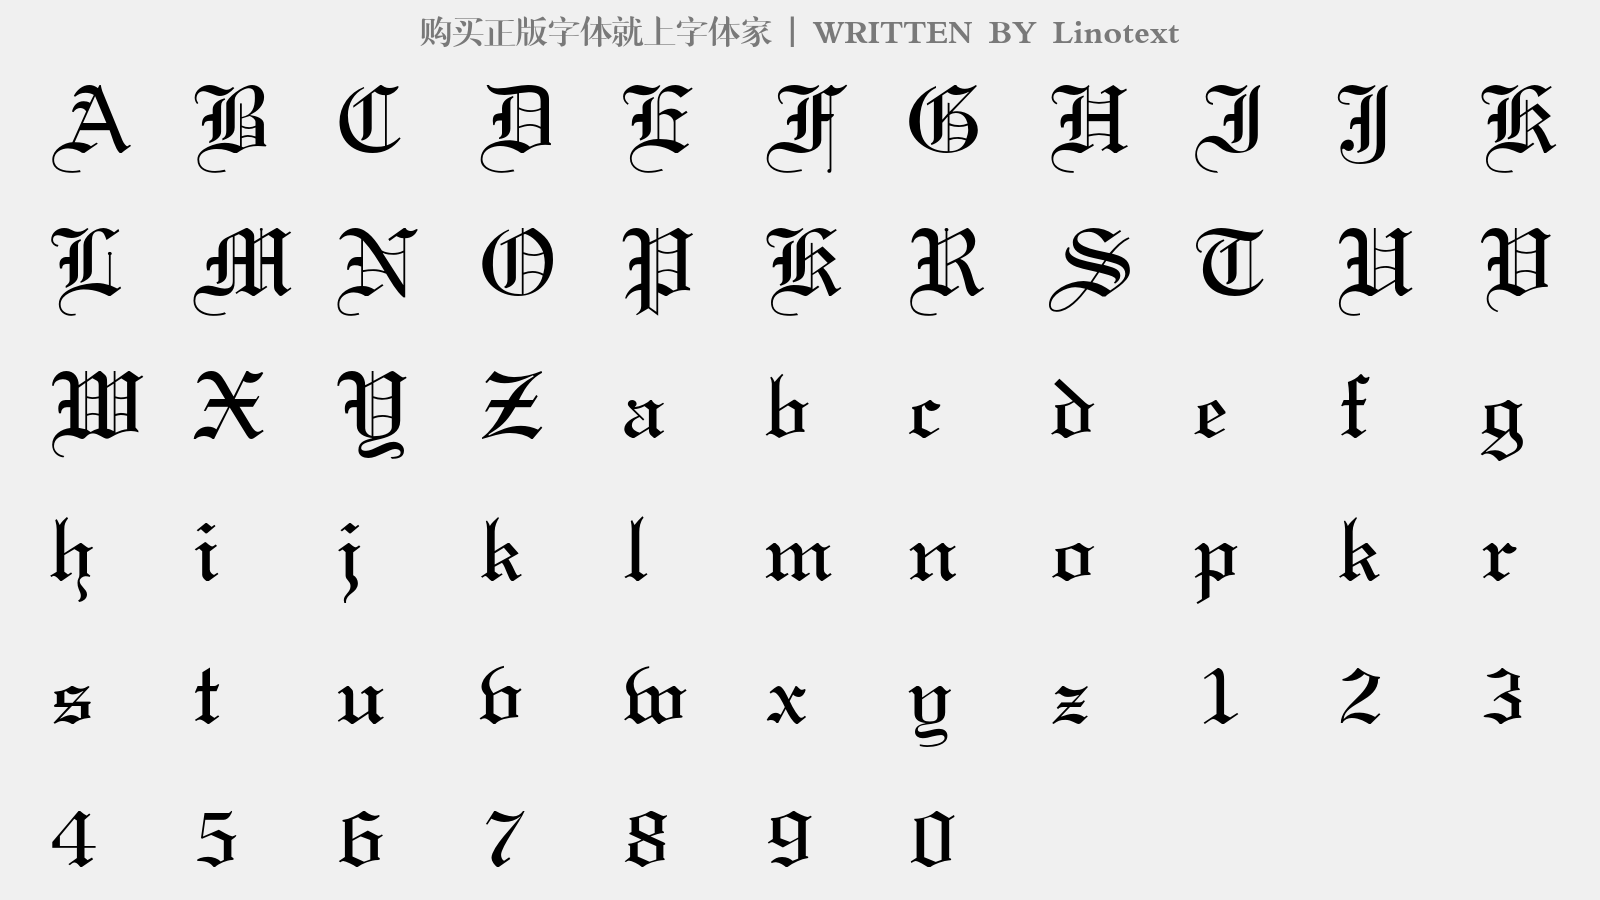 Linotext - 大写字母/小写字母/数字